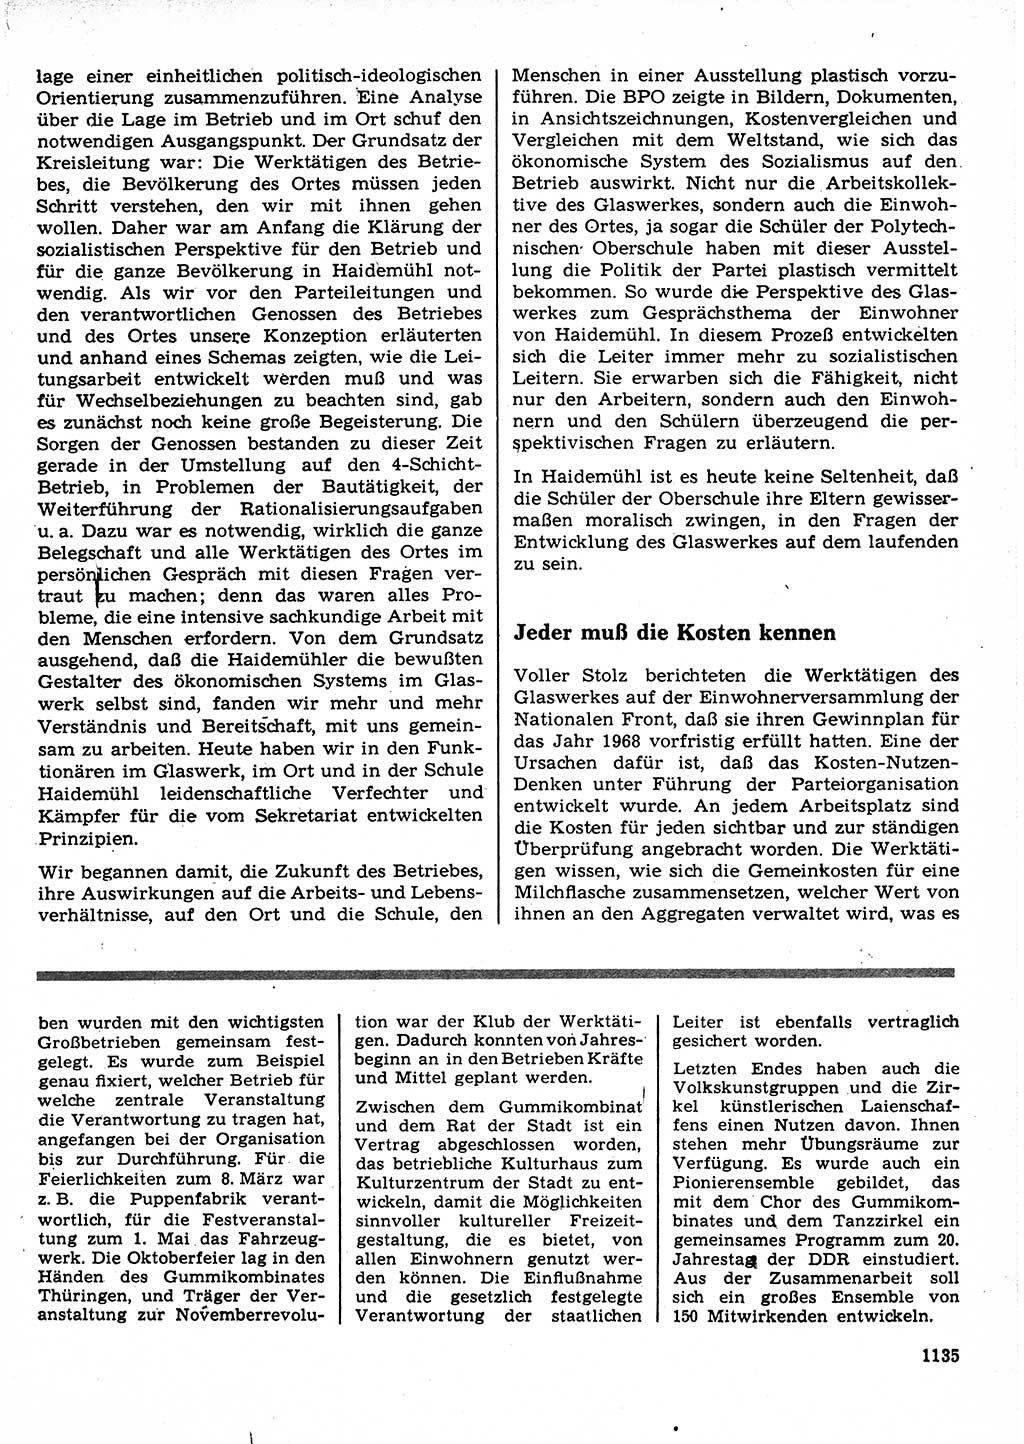 Neuer Weg (NW), Organ des Zentralkomitees (ZK) der SED (Sozialistische Einheitspartei Deutschlands) für Fragen des Parteilebens, 23. Jahrgang [Deutsche Demokratische Republik (DDR)] 1968, Seite 1119 (NW ZK SED DDR 1968, S. 1119)